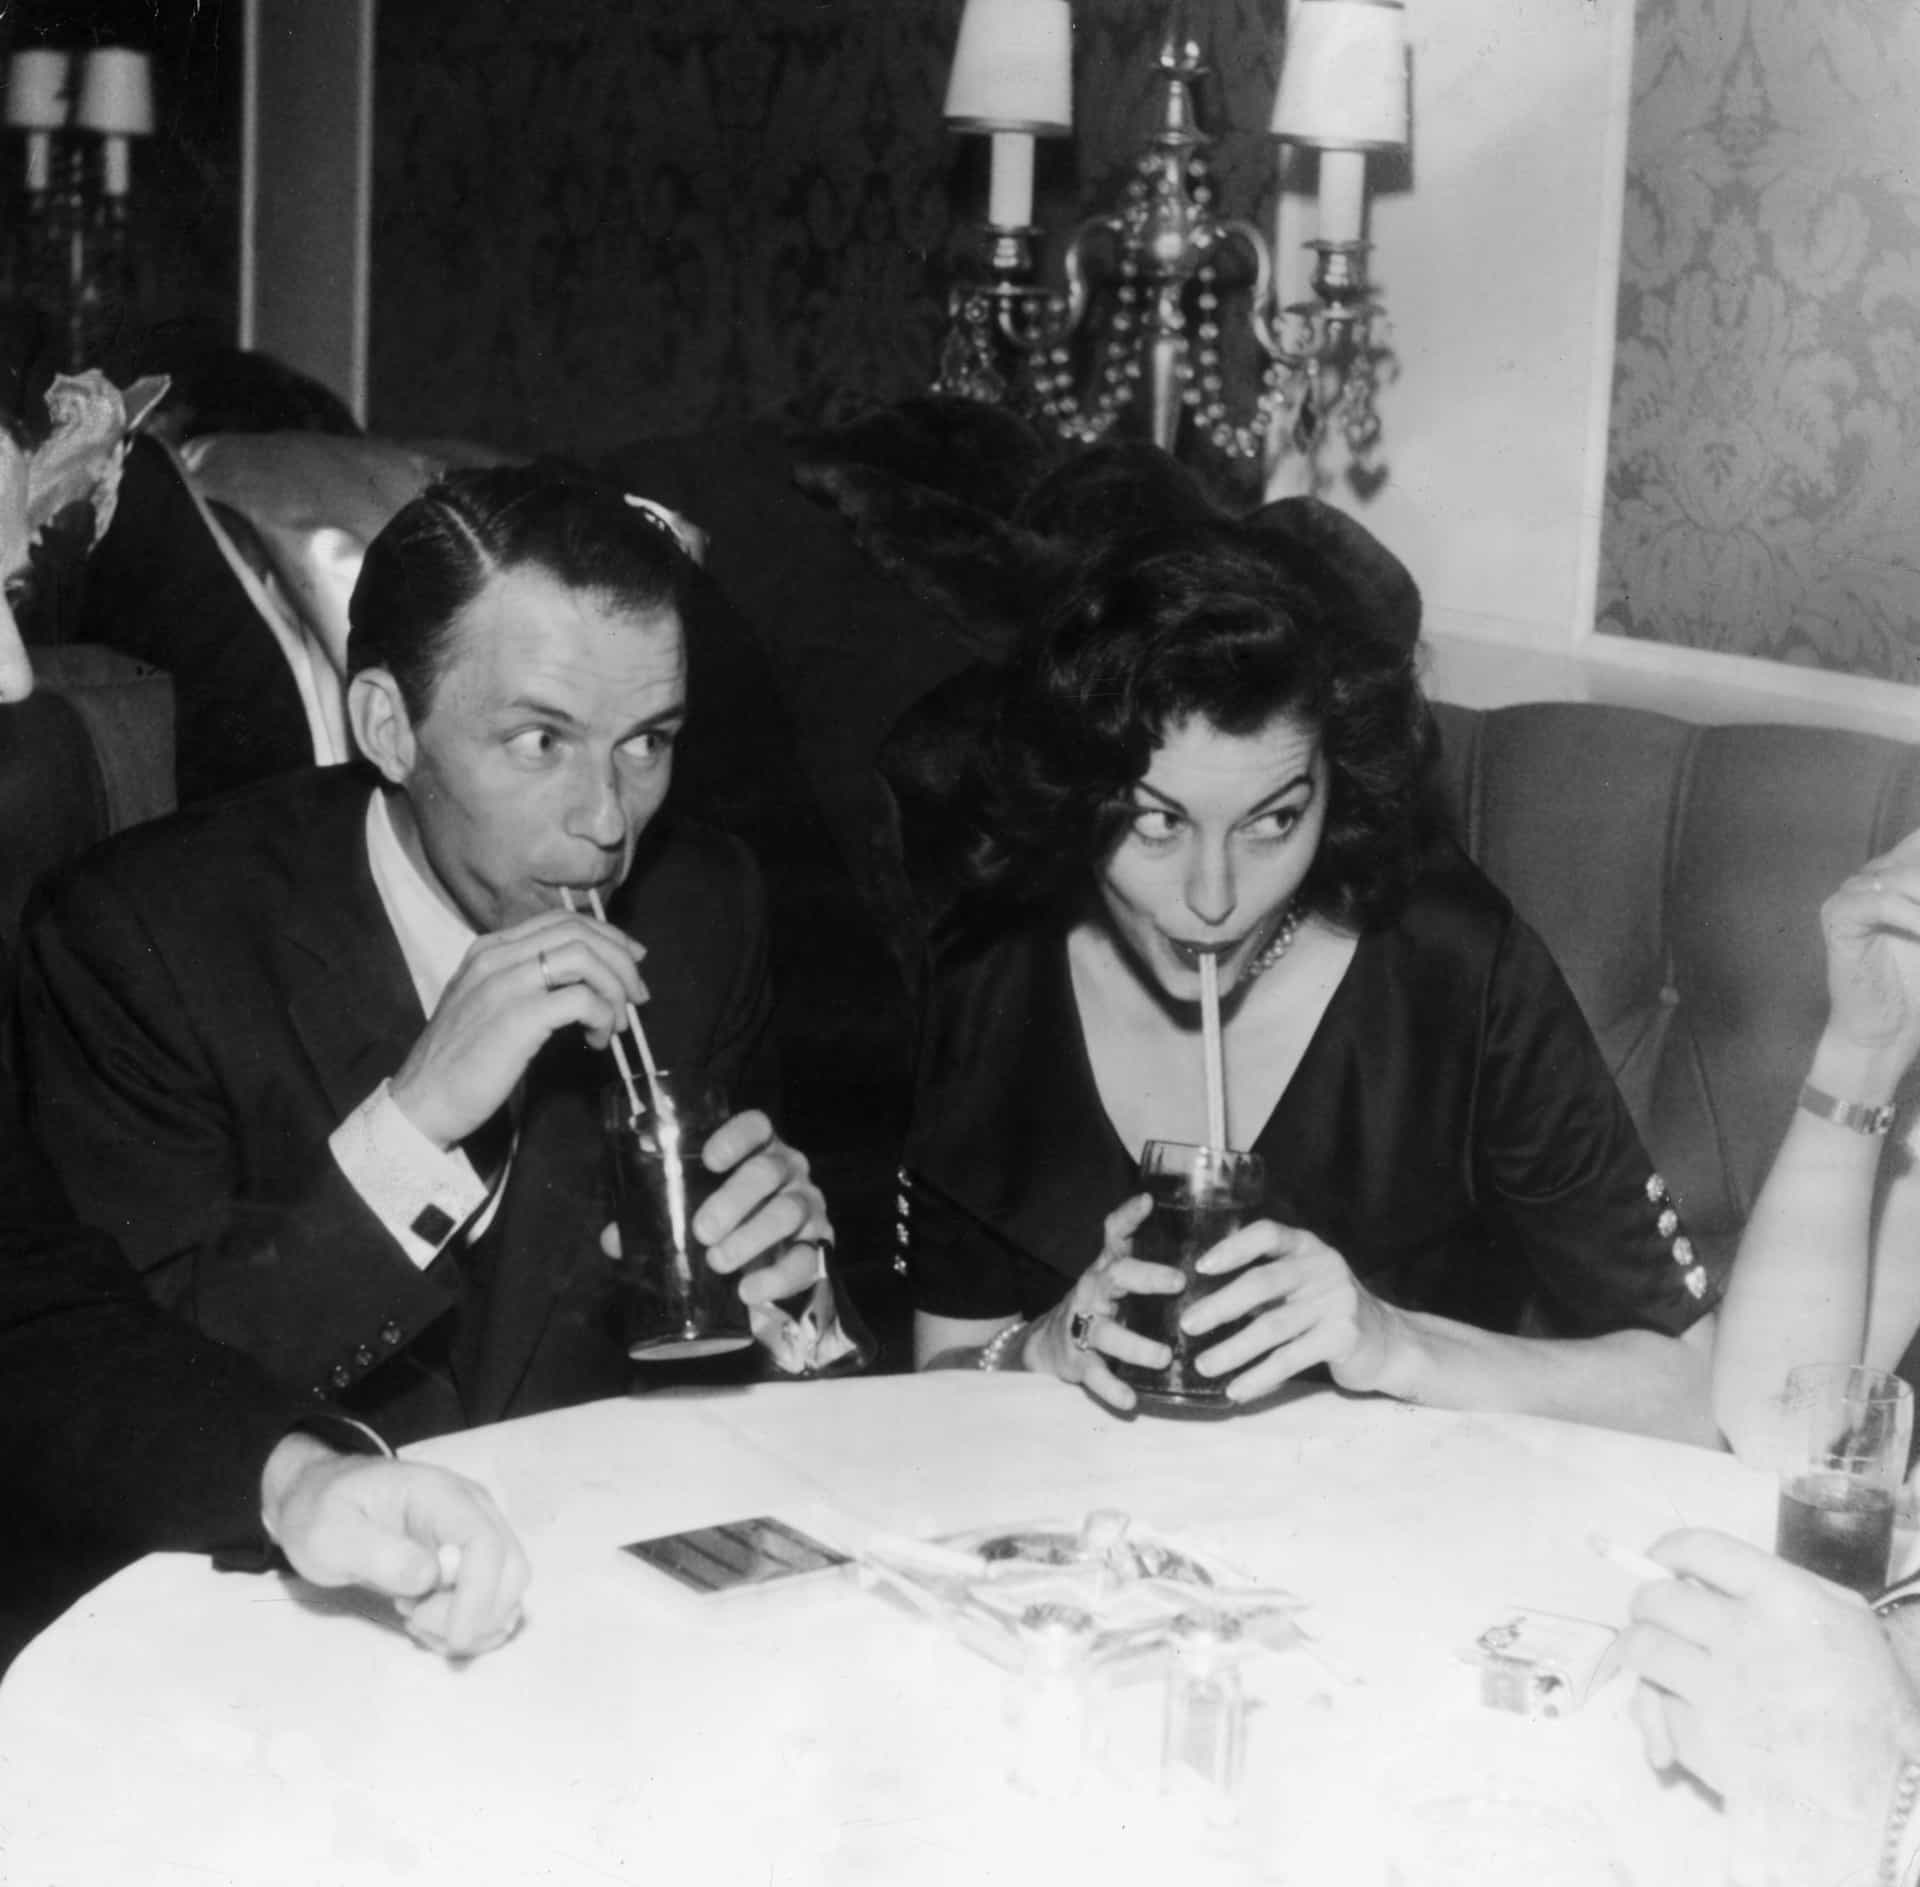 Sinatra war der dritte Ehemann von Gardner und sie war seine zweite Frau. Sie heirateten kurz nach seiner Scheidung von Nancy Barbato.